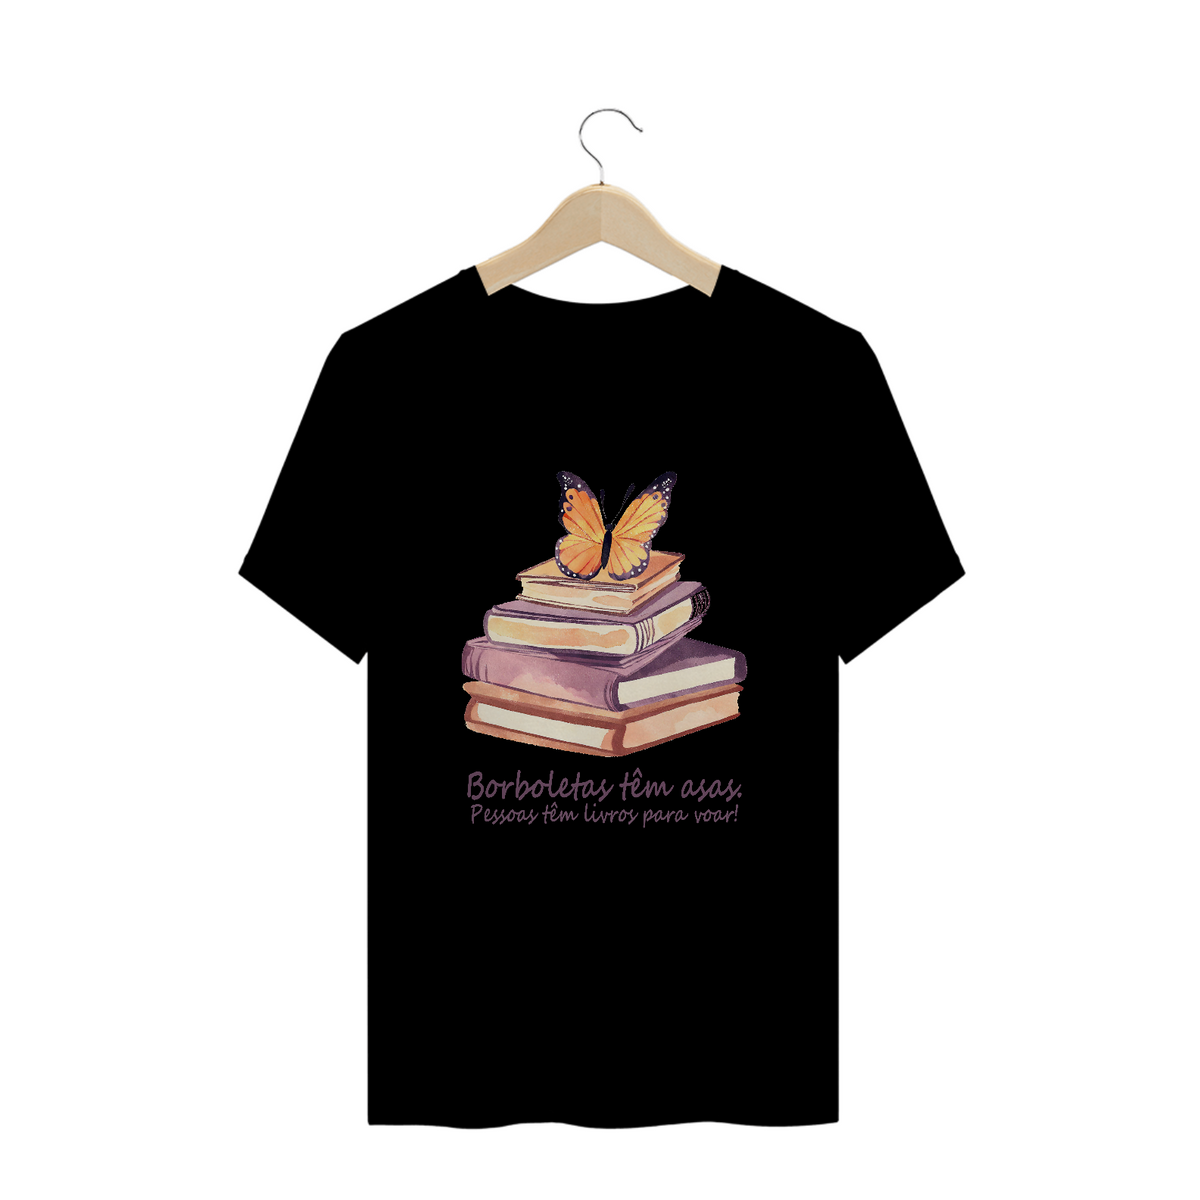 Nome do produto: Camiseta Plus Size Borboletas têm asas. Pessoas tem livros para voar!